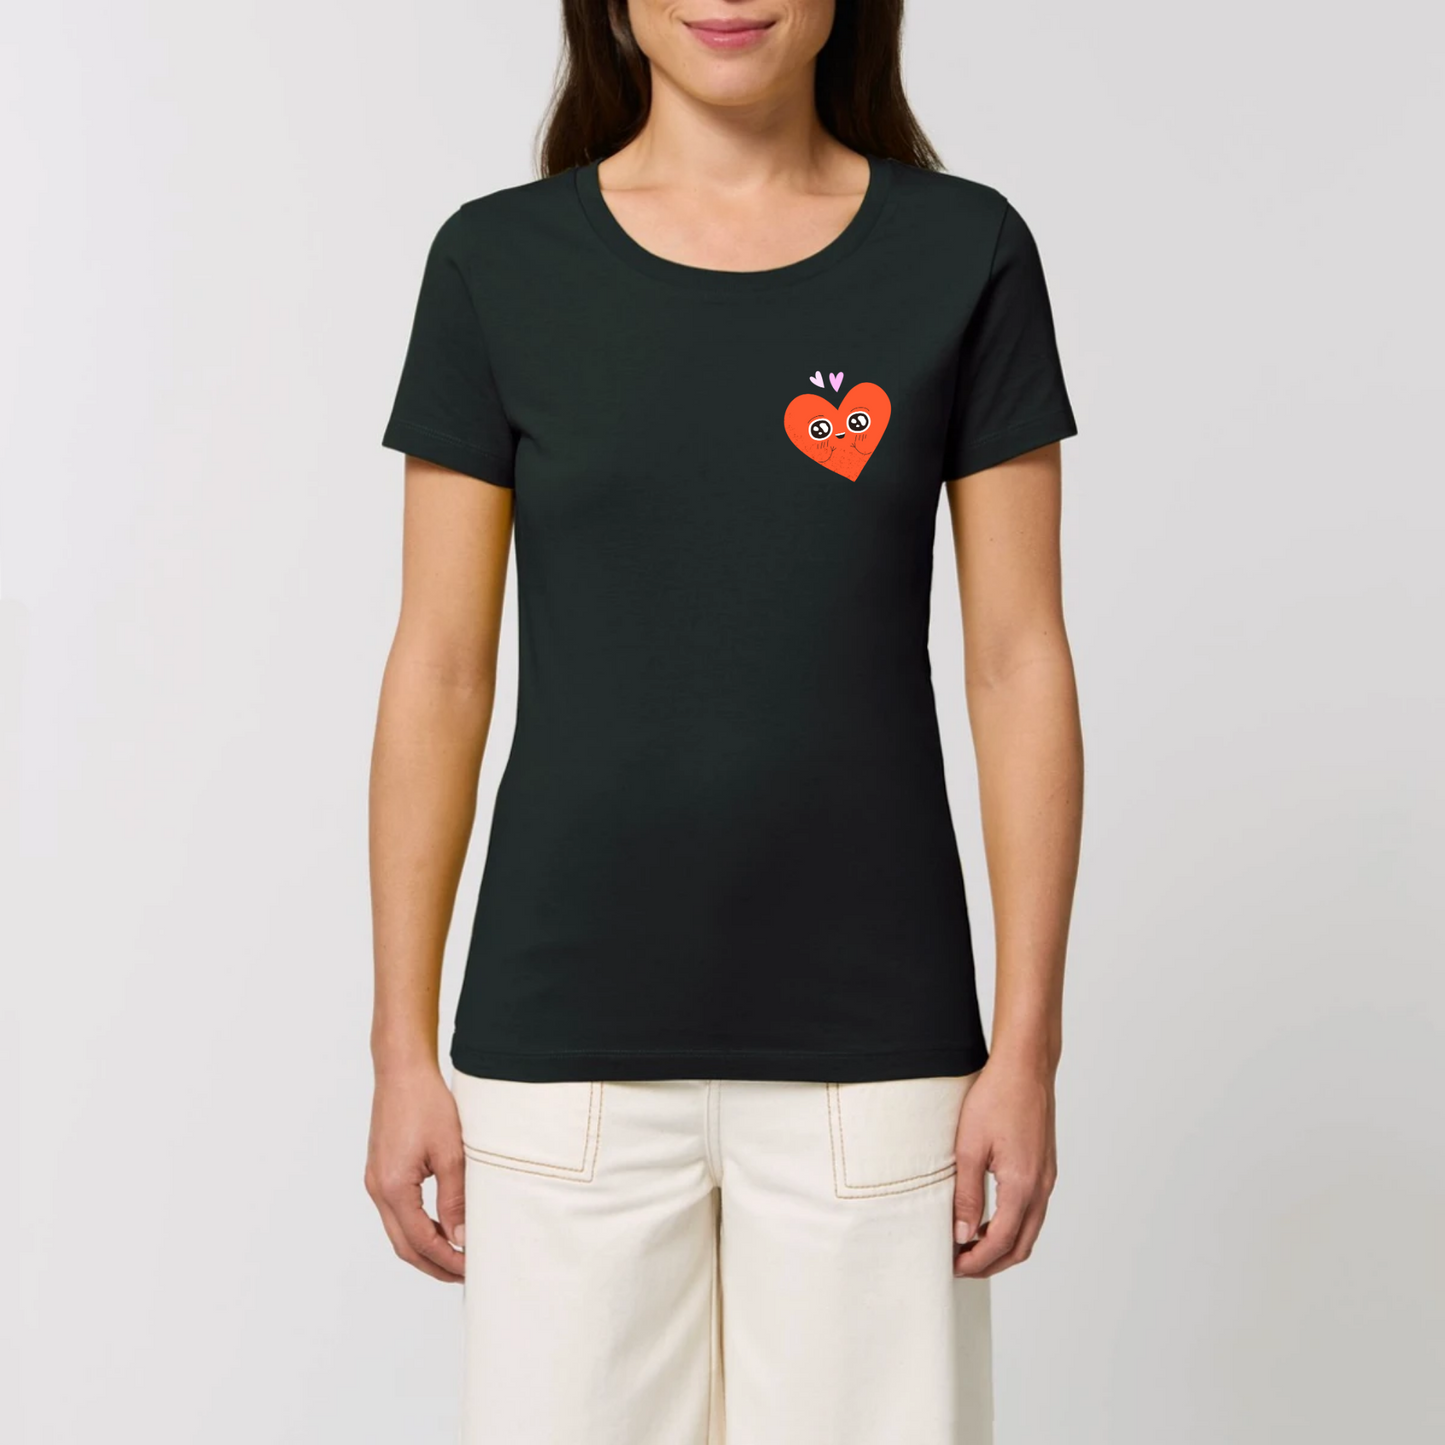 t-shirt femme Amoureux T-French coton bio, tee shirt femme, manches courtes , coeur, saint valentin, amour, Noir